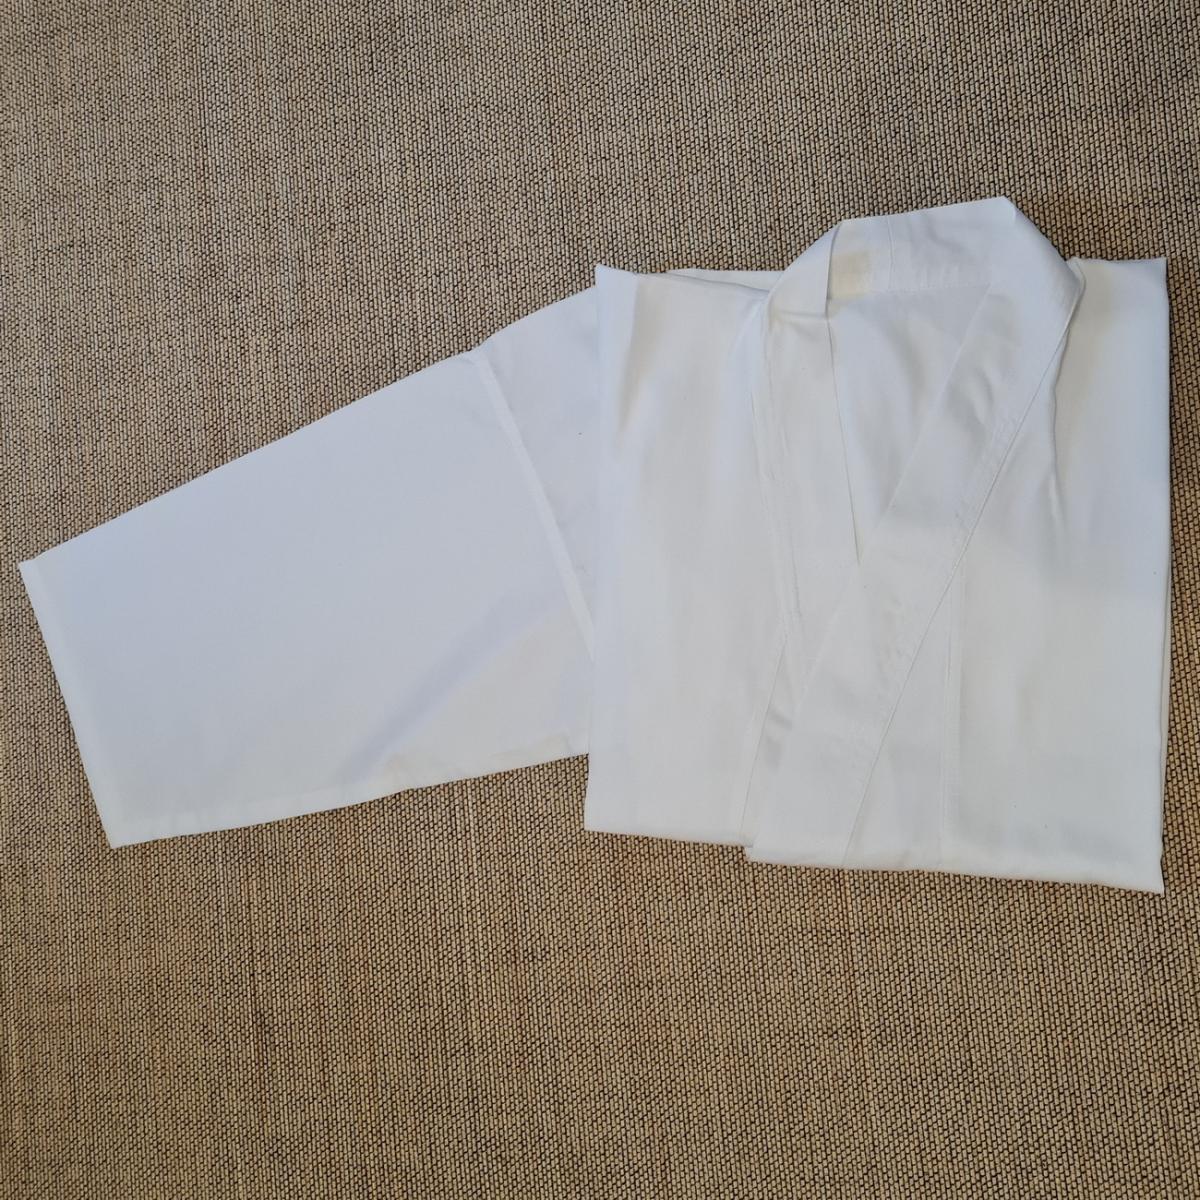 Gi aus Baumwolle - Stofffarbe weiß - Größe 155 cm ➤ www.bokken-shop.de. Gi passend für Iaido, Aikdo, Kendo, Jodo. Dein Budo-Fachhändler!